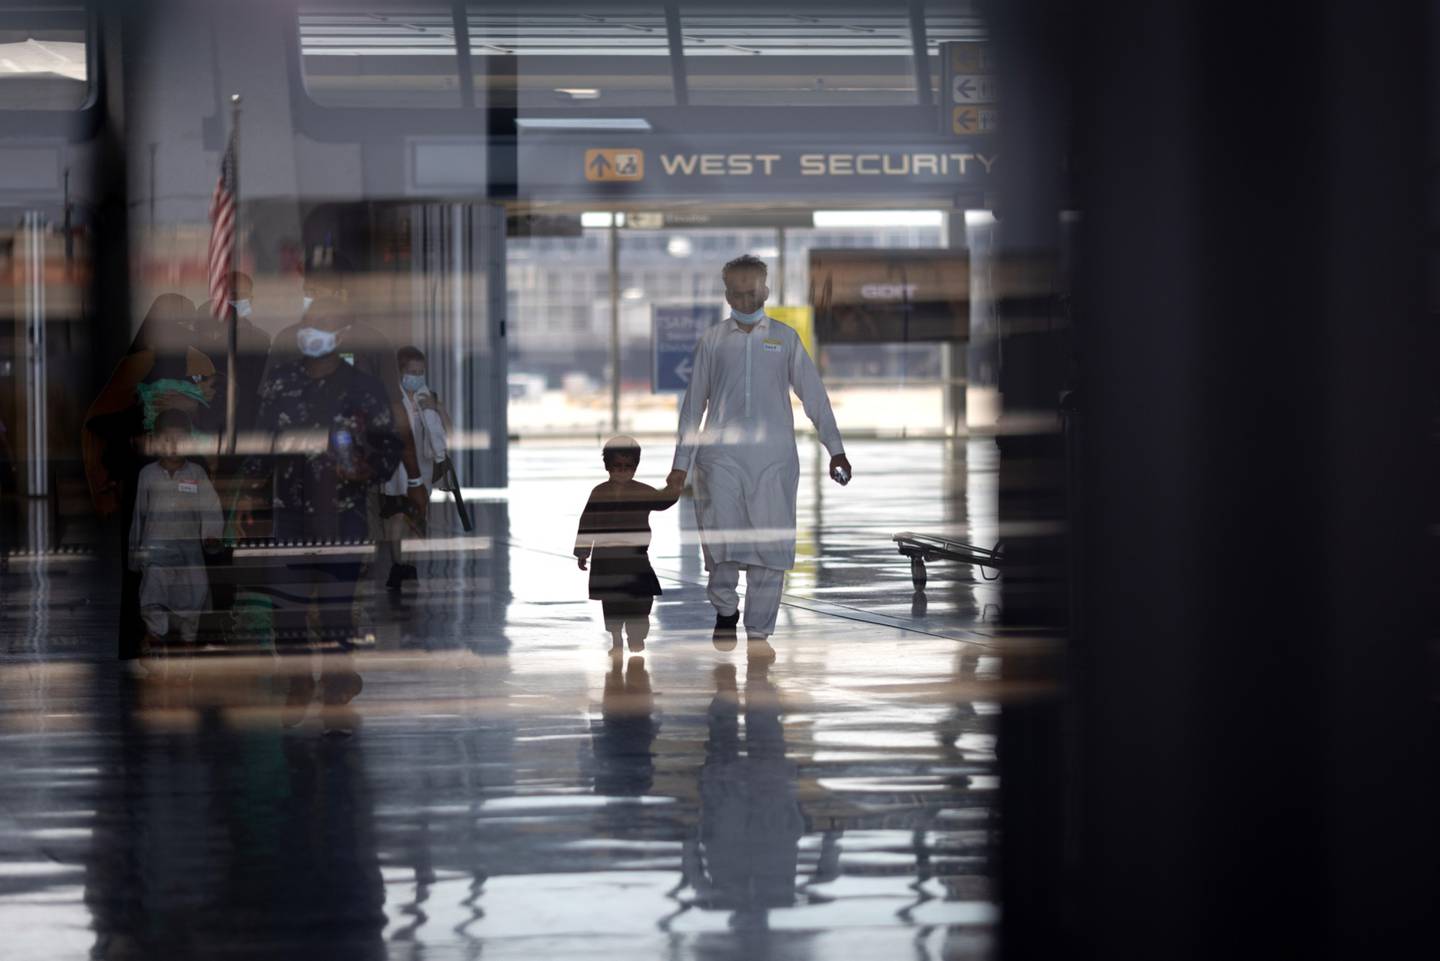 Refugiados evacuados de Kabul, Afganistán, caminan desde el aeropuerto internacional de Dulles hacia un autobús que los llevará a un centro de procesamiento de refugiados el 26 de agosto de 2021 en Dulles, Virginia. Foto de Win McNamee/Getty Images